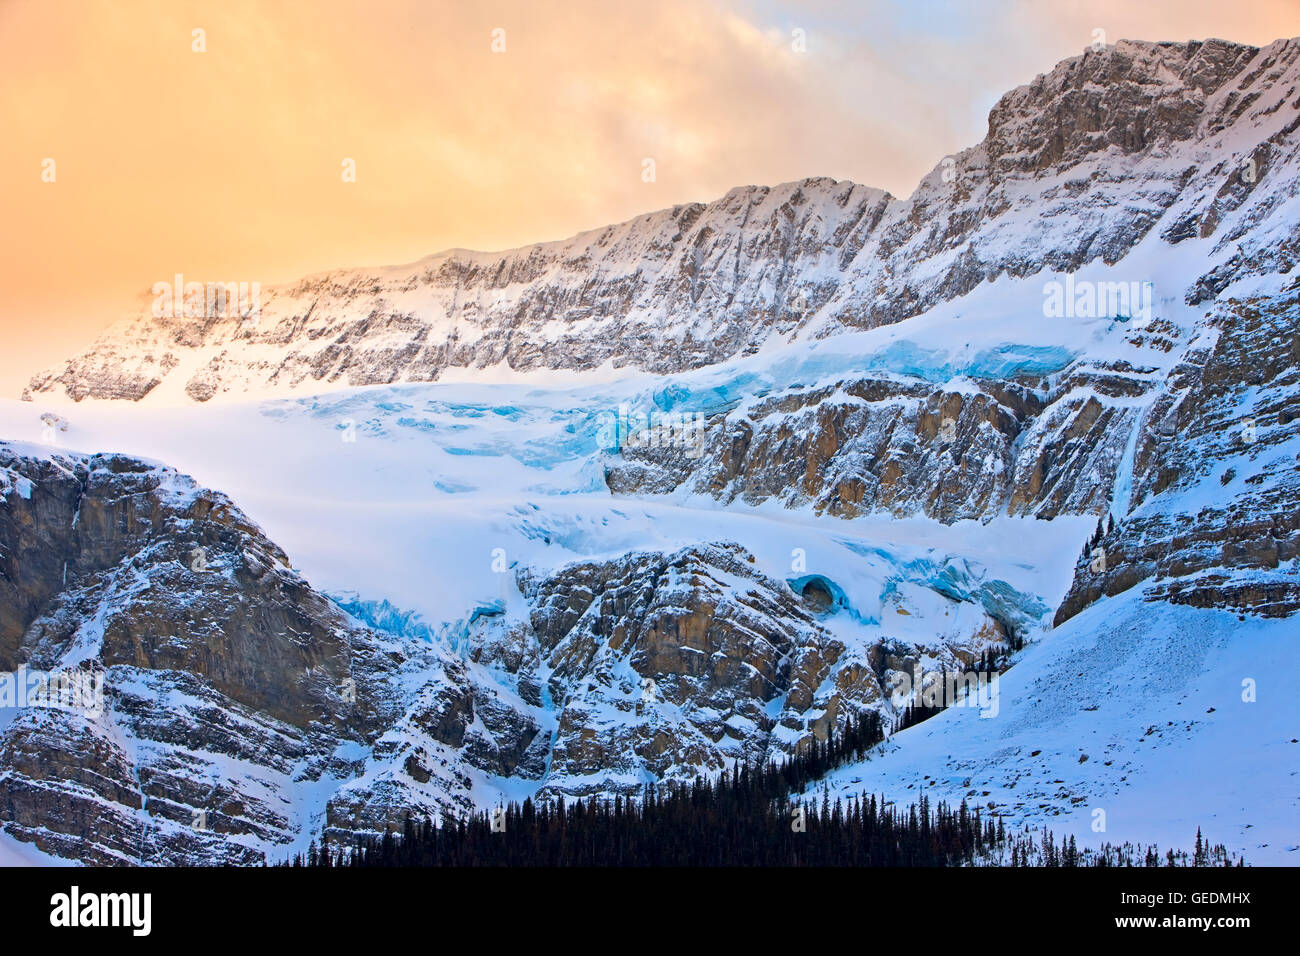 Geographie / Reisen, Kanada, Alberta, 288 km SW von Edmonton, Crowfoot Glacier entlang Icefields Parkway, Banff National Park, kanadischen Rocky Mountains, Alberta Banff Na aus gesehen Stockfoto